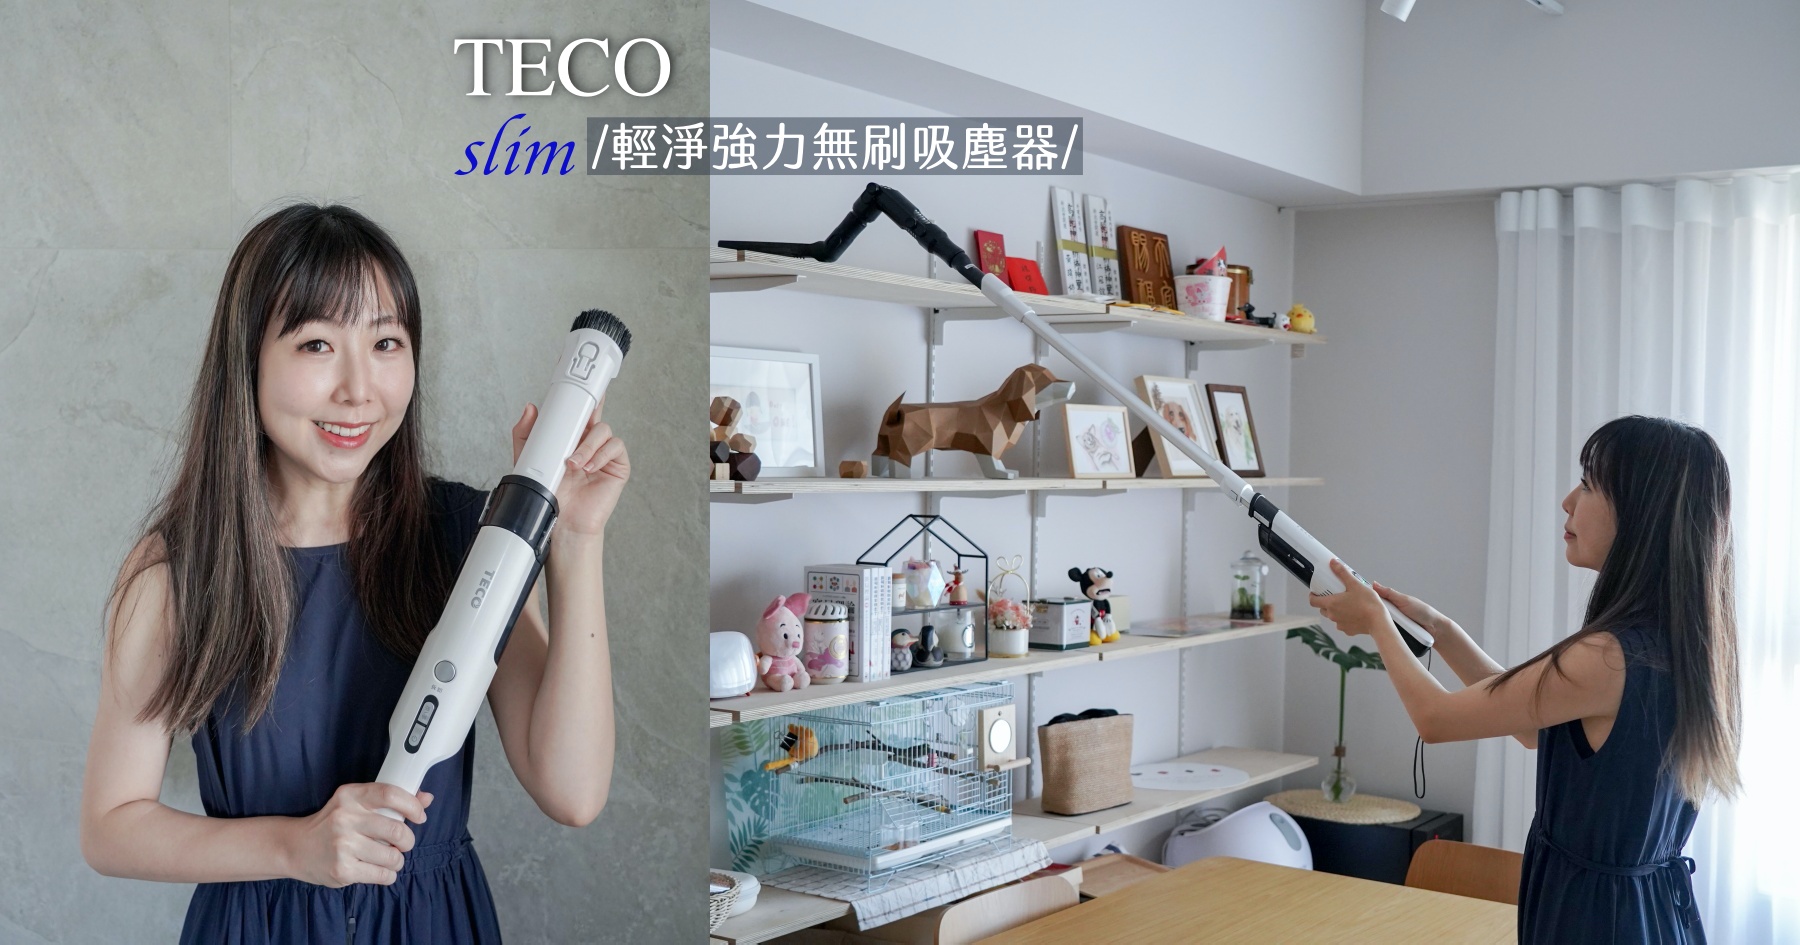 即時熱門文章：開箱東元TECO slim 輕淨強力無刷吸塵器！輕巧順手低噪音、美型好收納